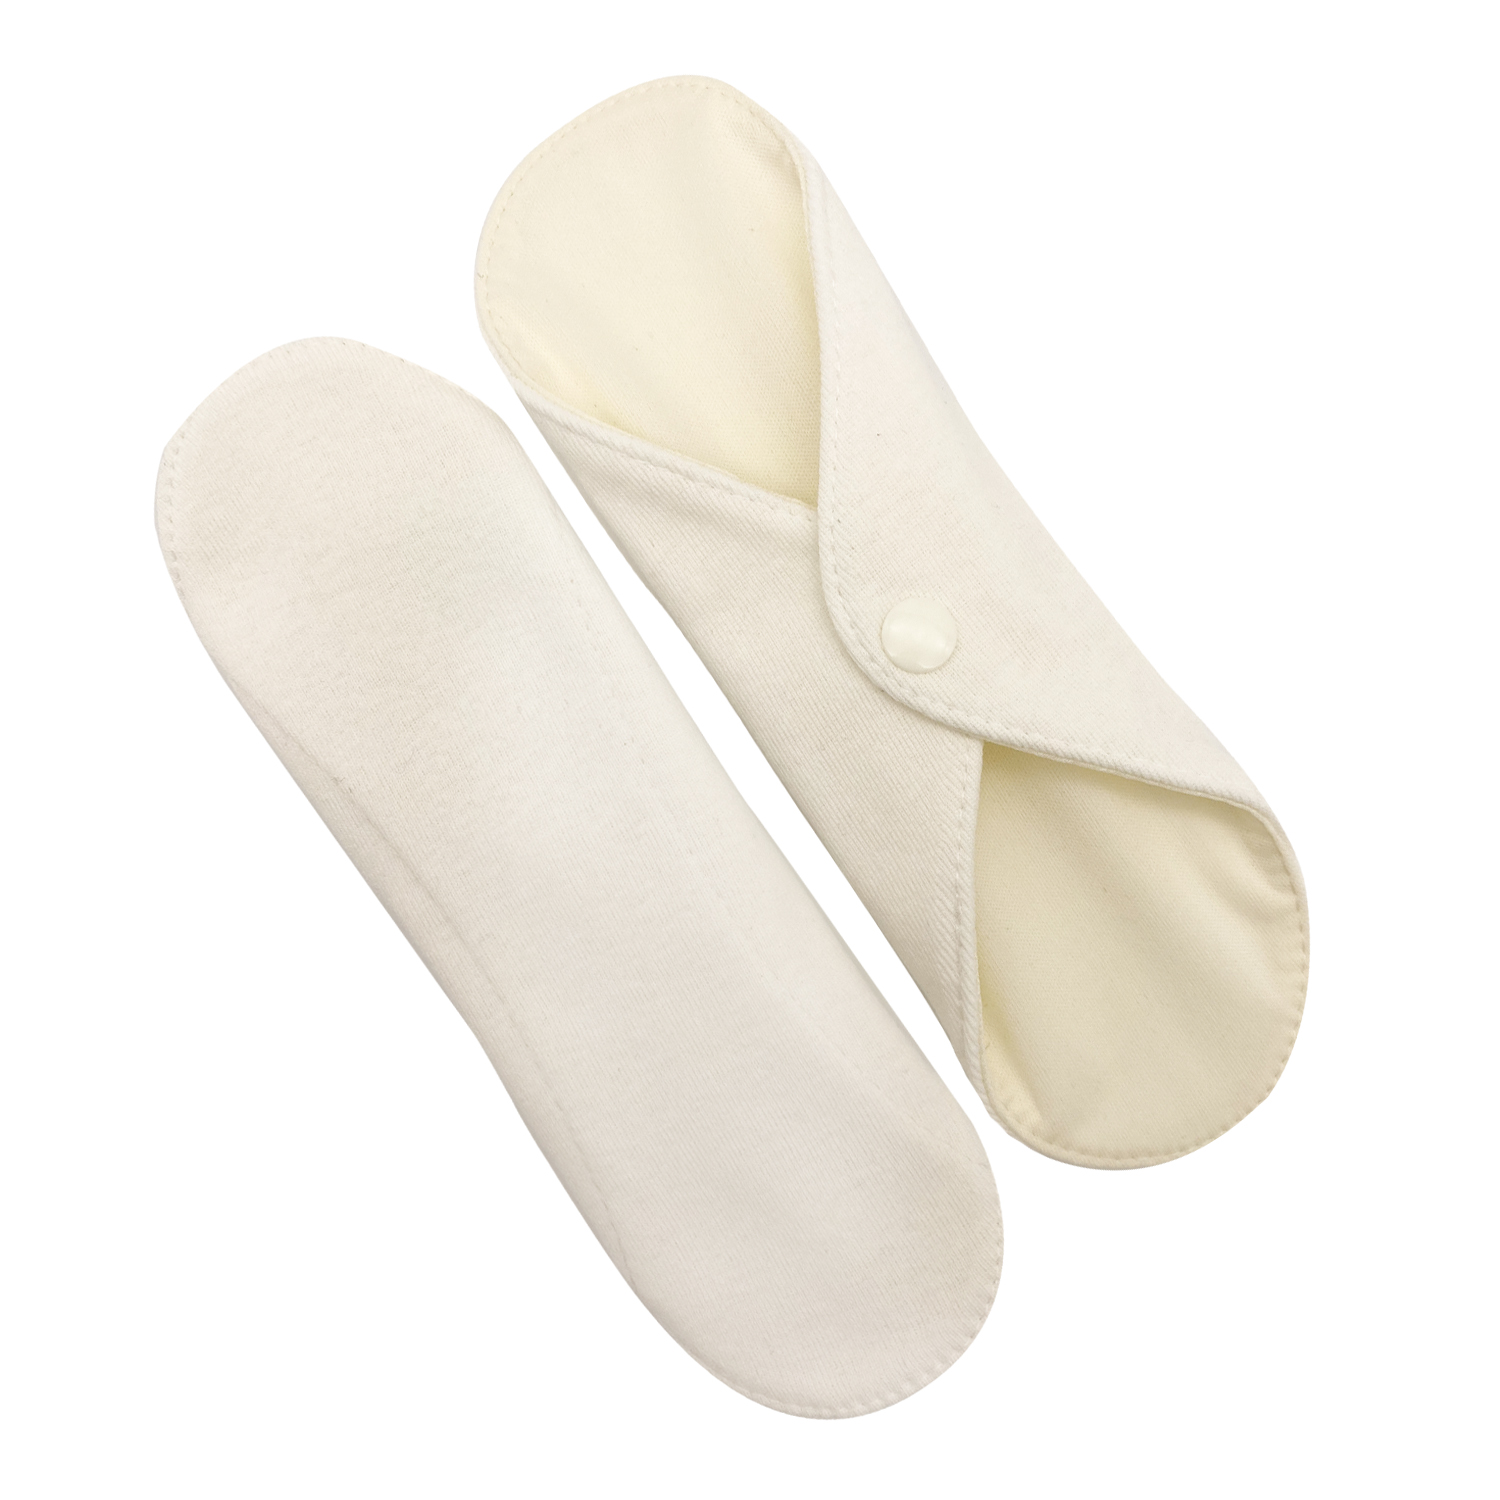 Прокладки для менструации многоразовые Mamalino бежевые набор 2 шт. размер Миди набор салфеток с пропиткой вгмо этель shine 45 45см цв бежевый пл 192 г м2